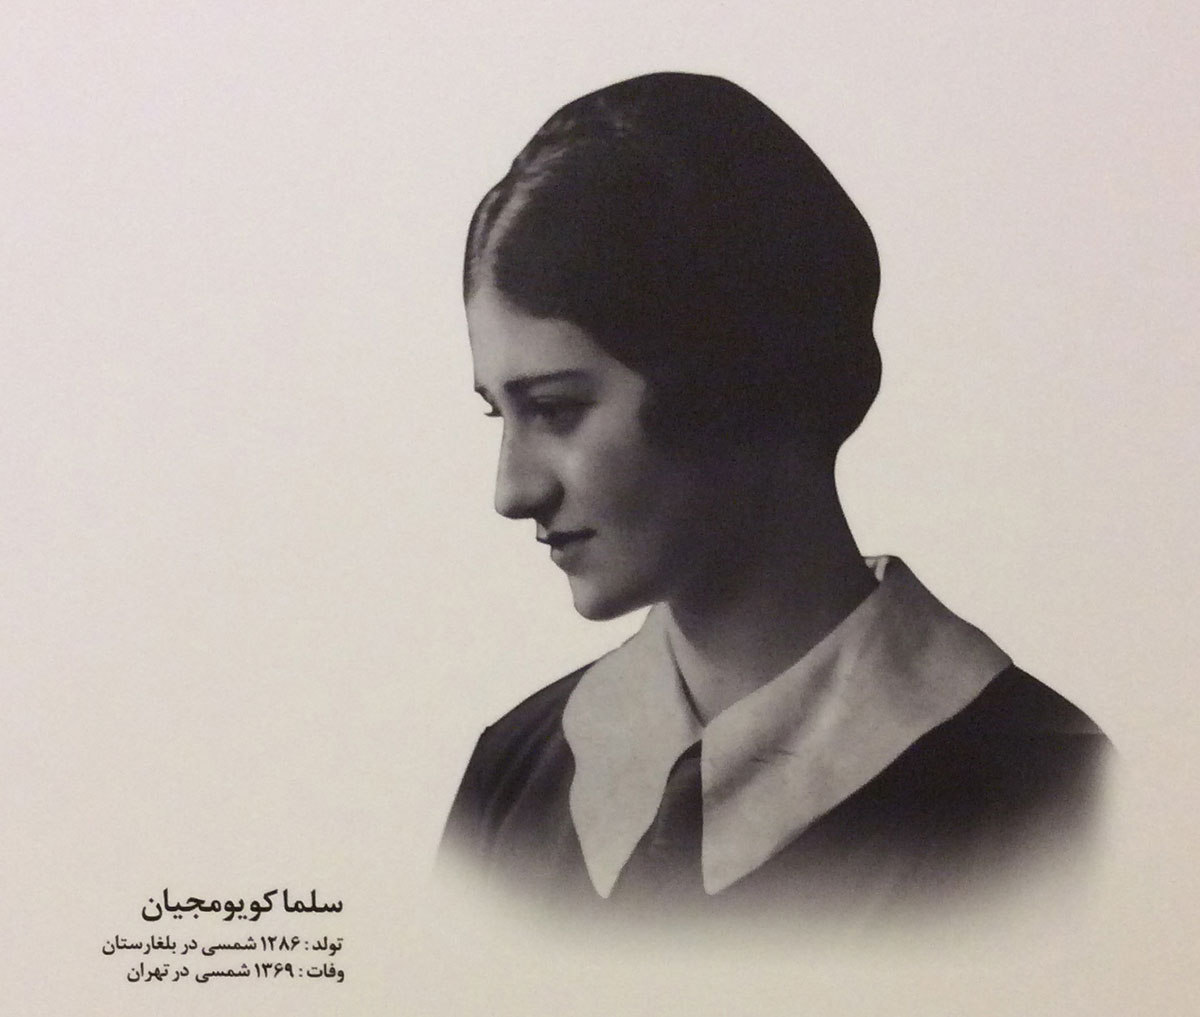 مراسم گرامیداشت سِلما کویومجیان،باستان شناس ارمنی الاصل در تهران برگزار گردید.